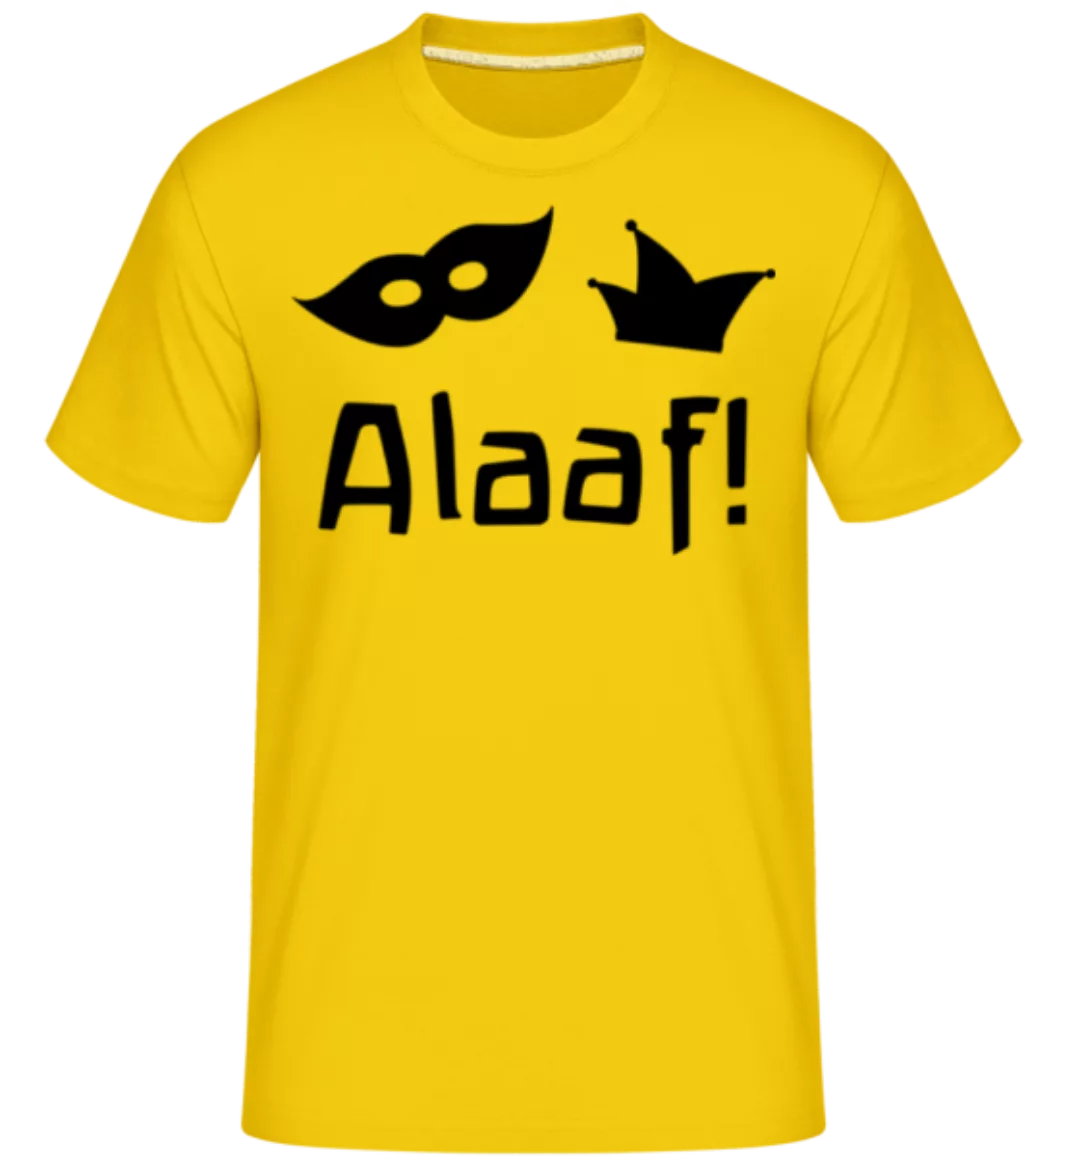 Alaaf! · Shirtinator Männer T-Shirt günstig online kaufen